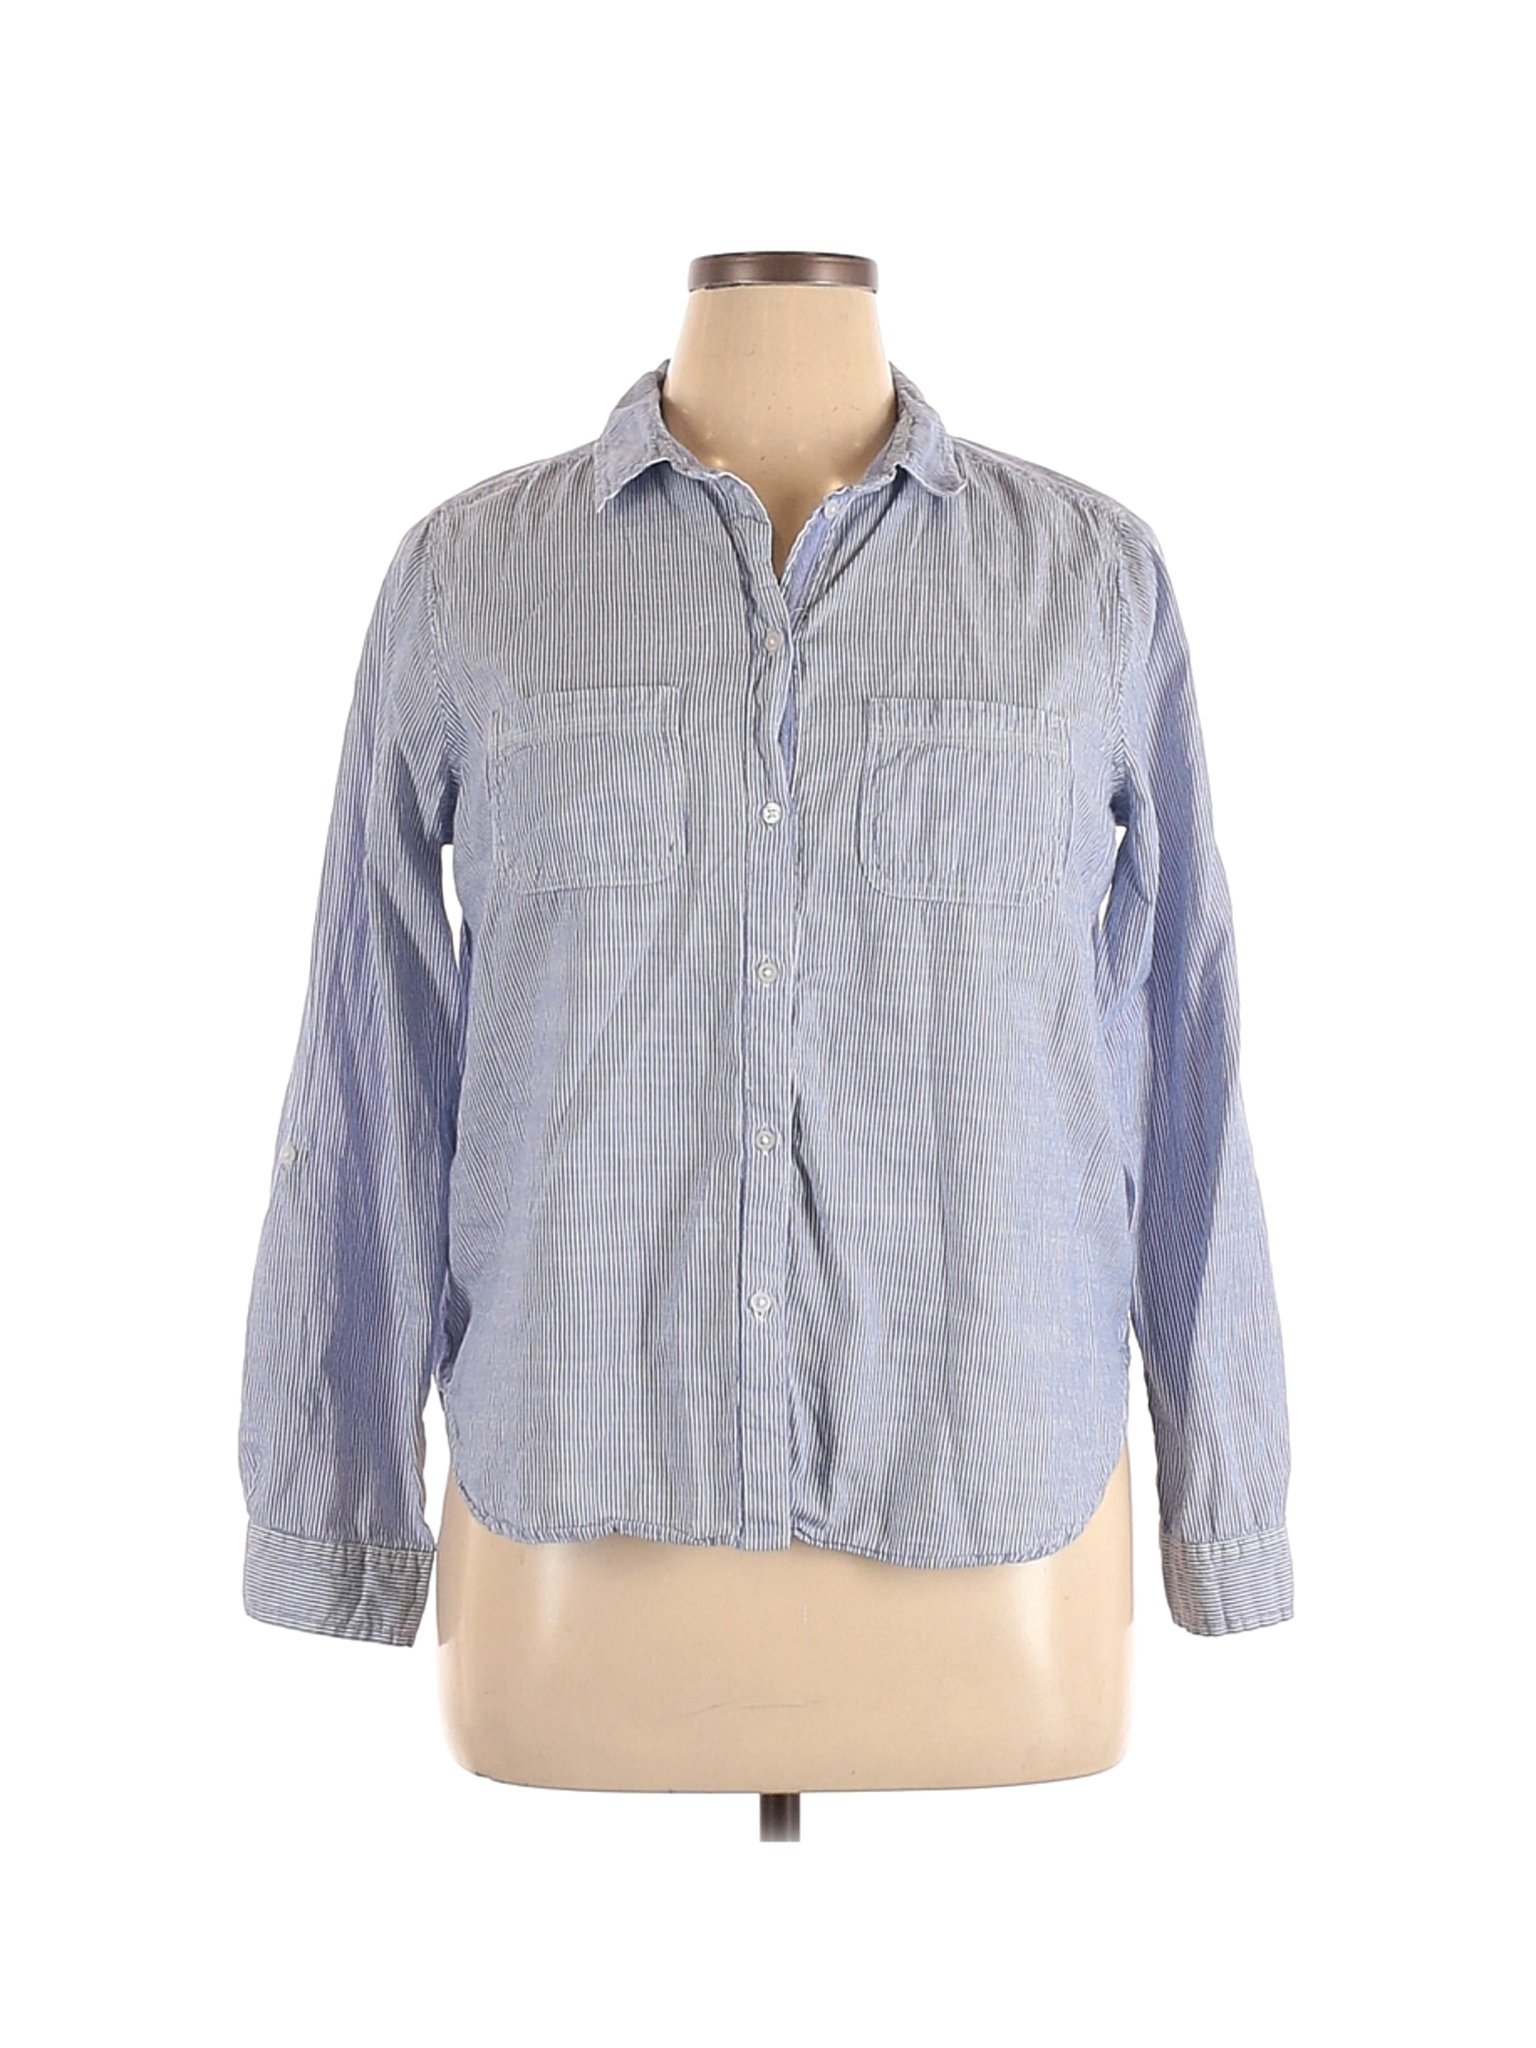 Eden & Olivia Women Blue Long Sleeve Button-Down Shirt XL | eBay